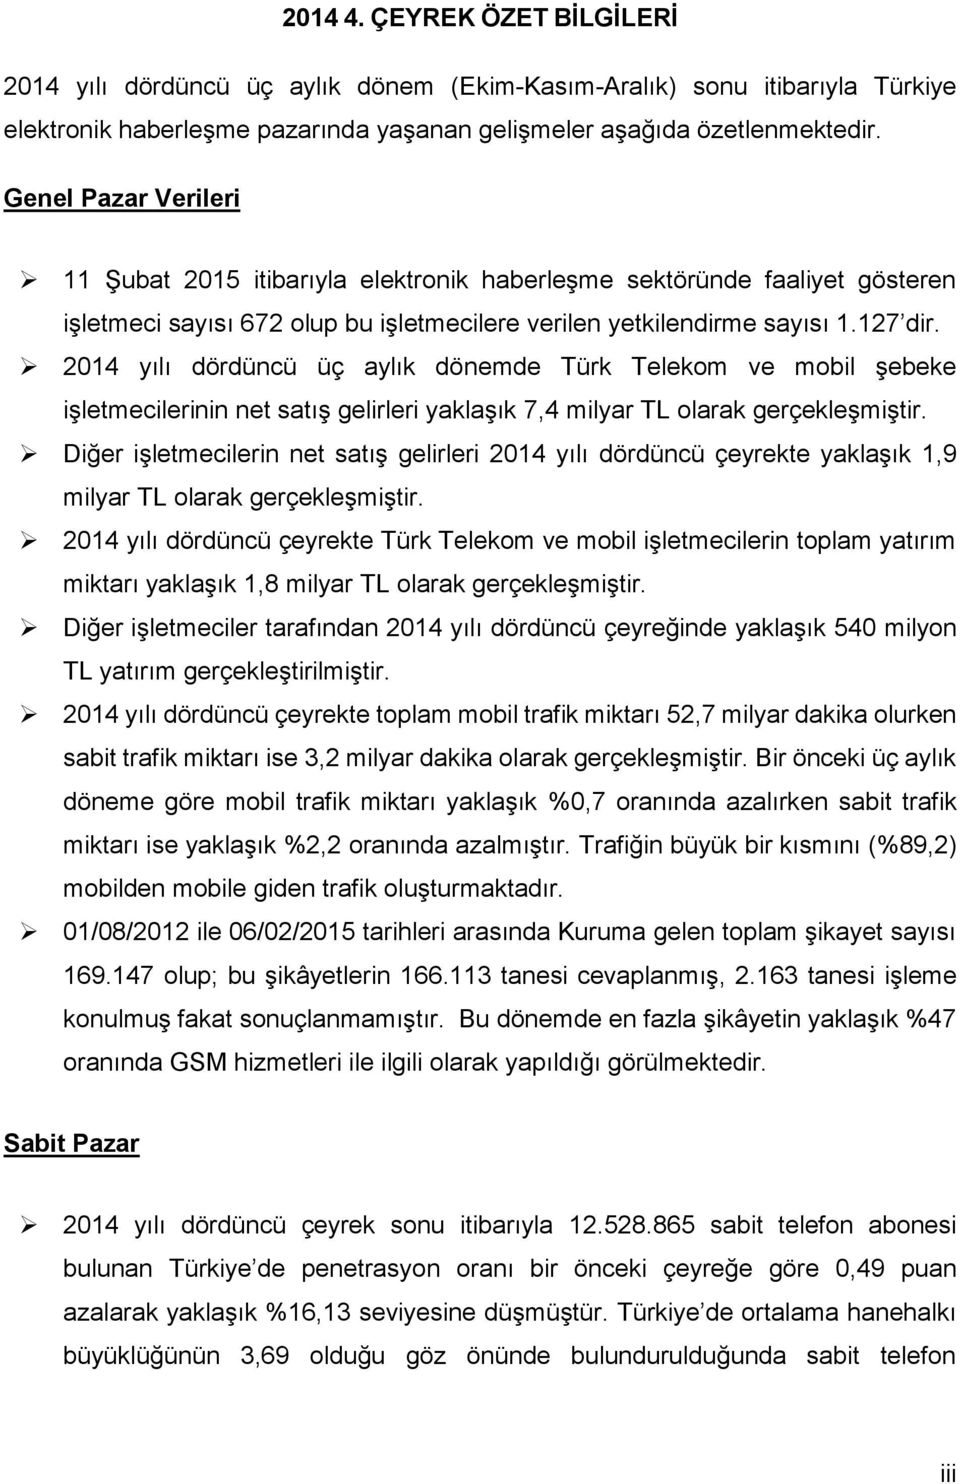 214 yılı dördüncü üç aylık dönemde Türk Telekom ve mobil şebeke işletmecilerinin net satış gelirleri yaklaşık 7,4 milyar TL olarak gerçekleşmiştir.